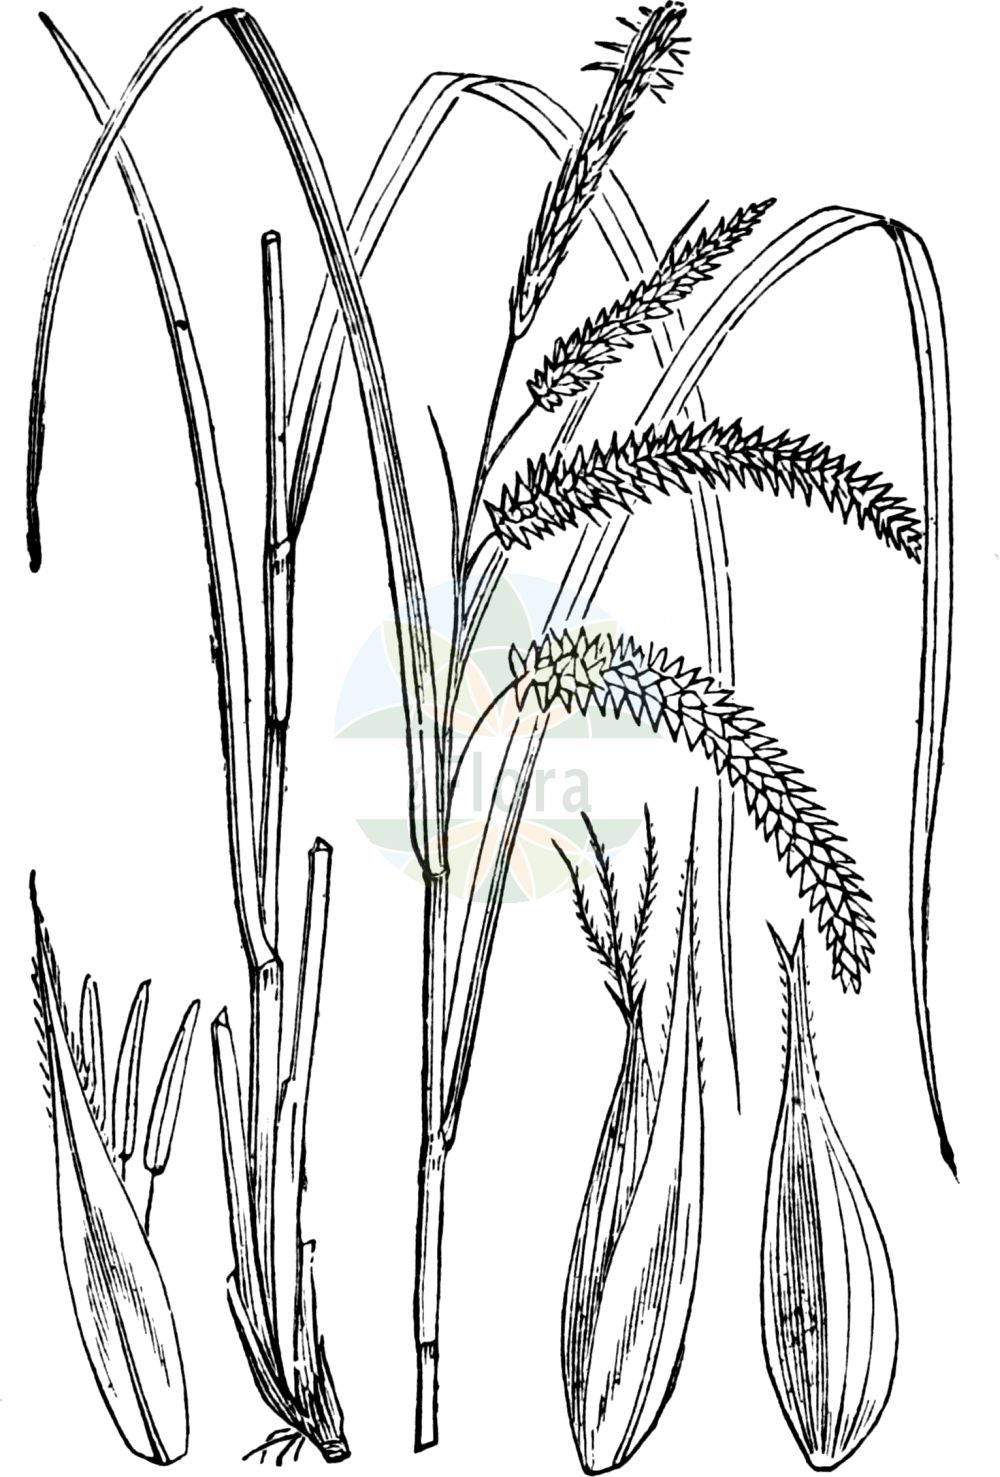 Historische Abbildung von Carex pseudocyperus (Scheinzypergras-Segge - Cyperus Sedge). Das Bild zeigt Blatt, Bluete, Frucht und Same. ---- Historical Drawing of Carex pseudocyperus (Scheinzypergras-Segge - Cyperus Sedge). The image is showing leaf, flower, fruit and seed.(Carex pseudocyperus,Scheinzypergras-Segge,Cyperus Sedge,Carex pseudocyperus,Scheinzypergras-Segge,Schein-Zypergras-Segge,Cyperus Sedge,Cypress-like Sedge,Hop Sedge,Carex,Segge,Sedge,Cyperaceae,Sauergräser,Sedge family,Blatt,Bluete,Frucht,Same,leaf,flower,fruit,seed,Fitch et al. (1880))